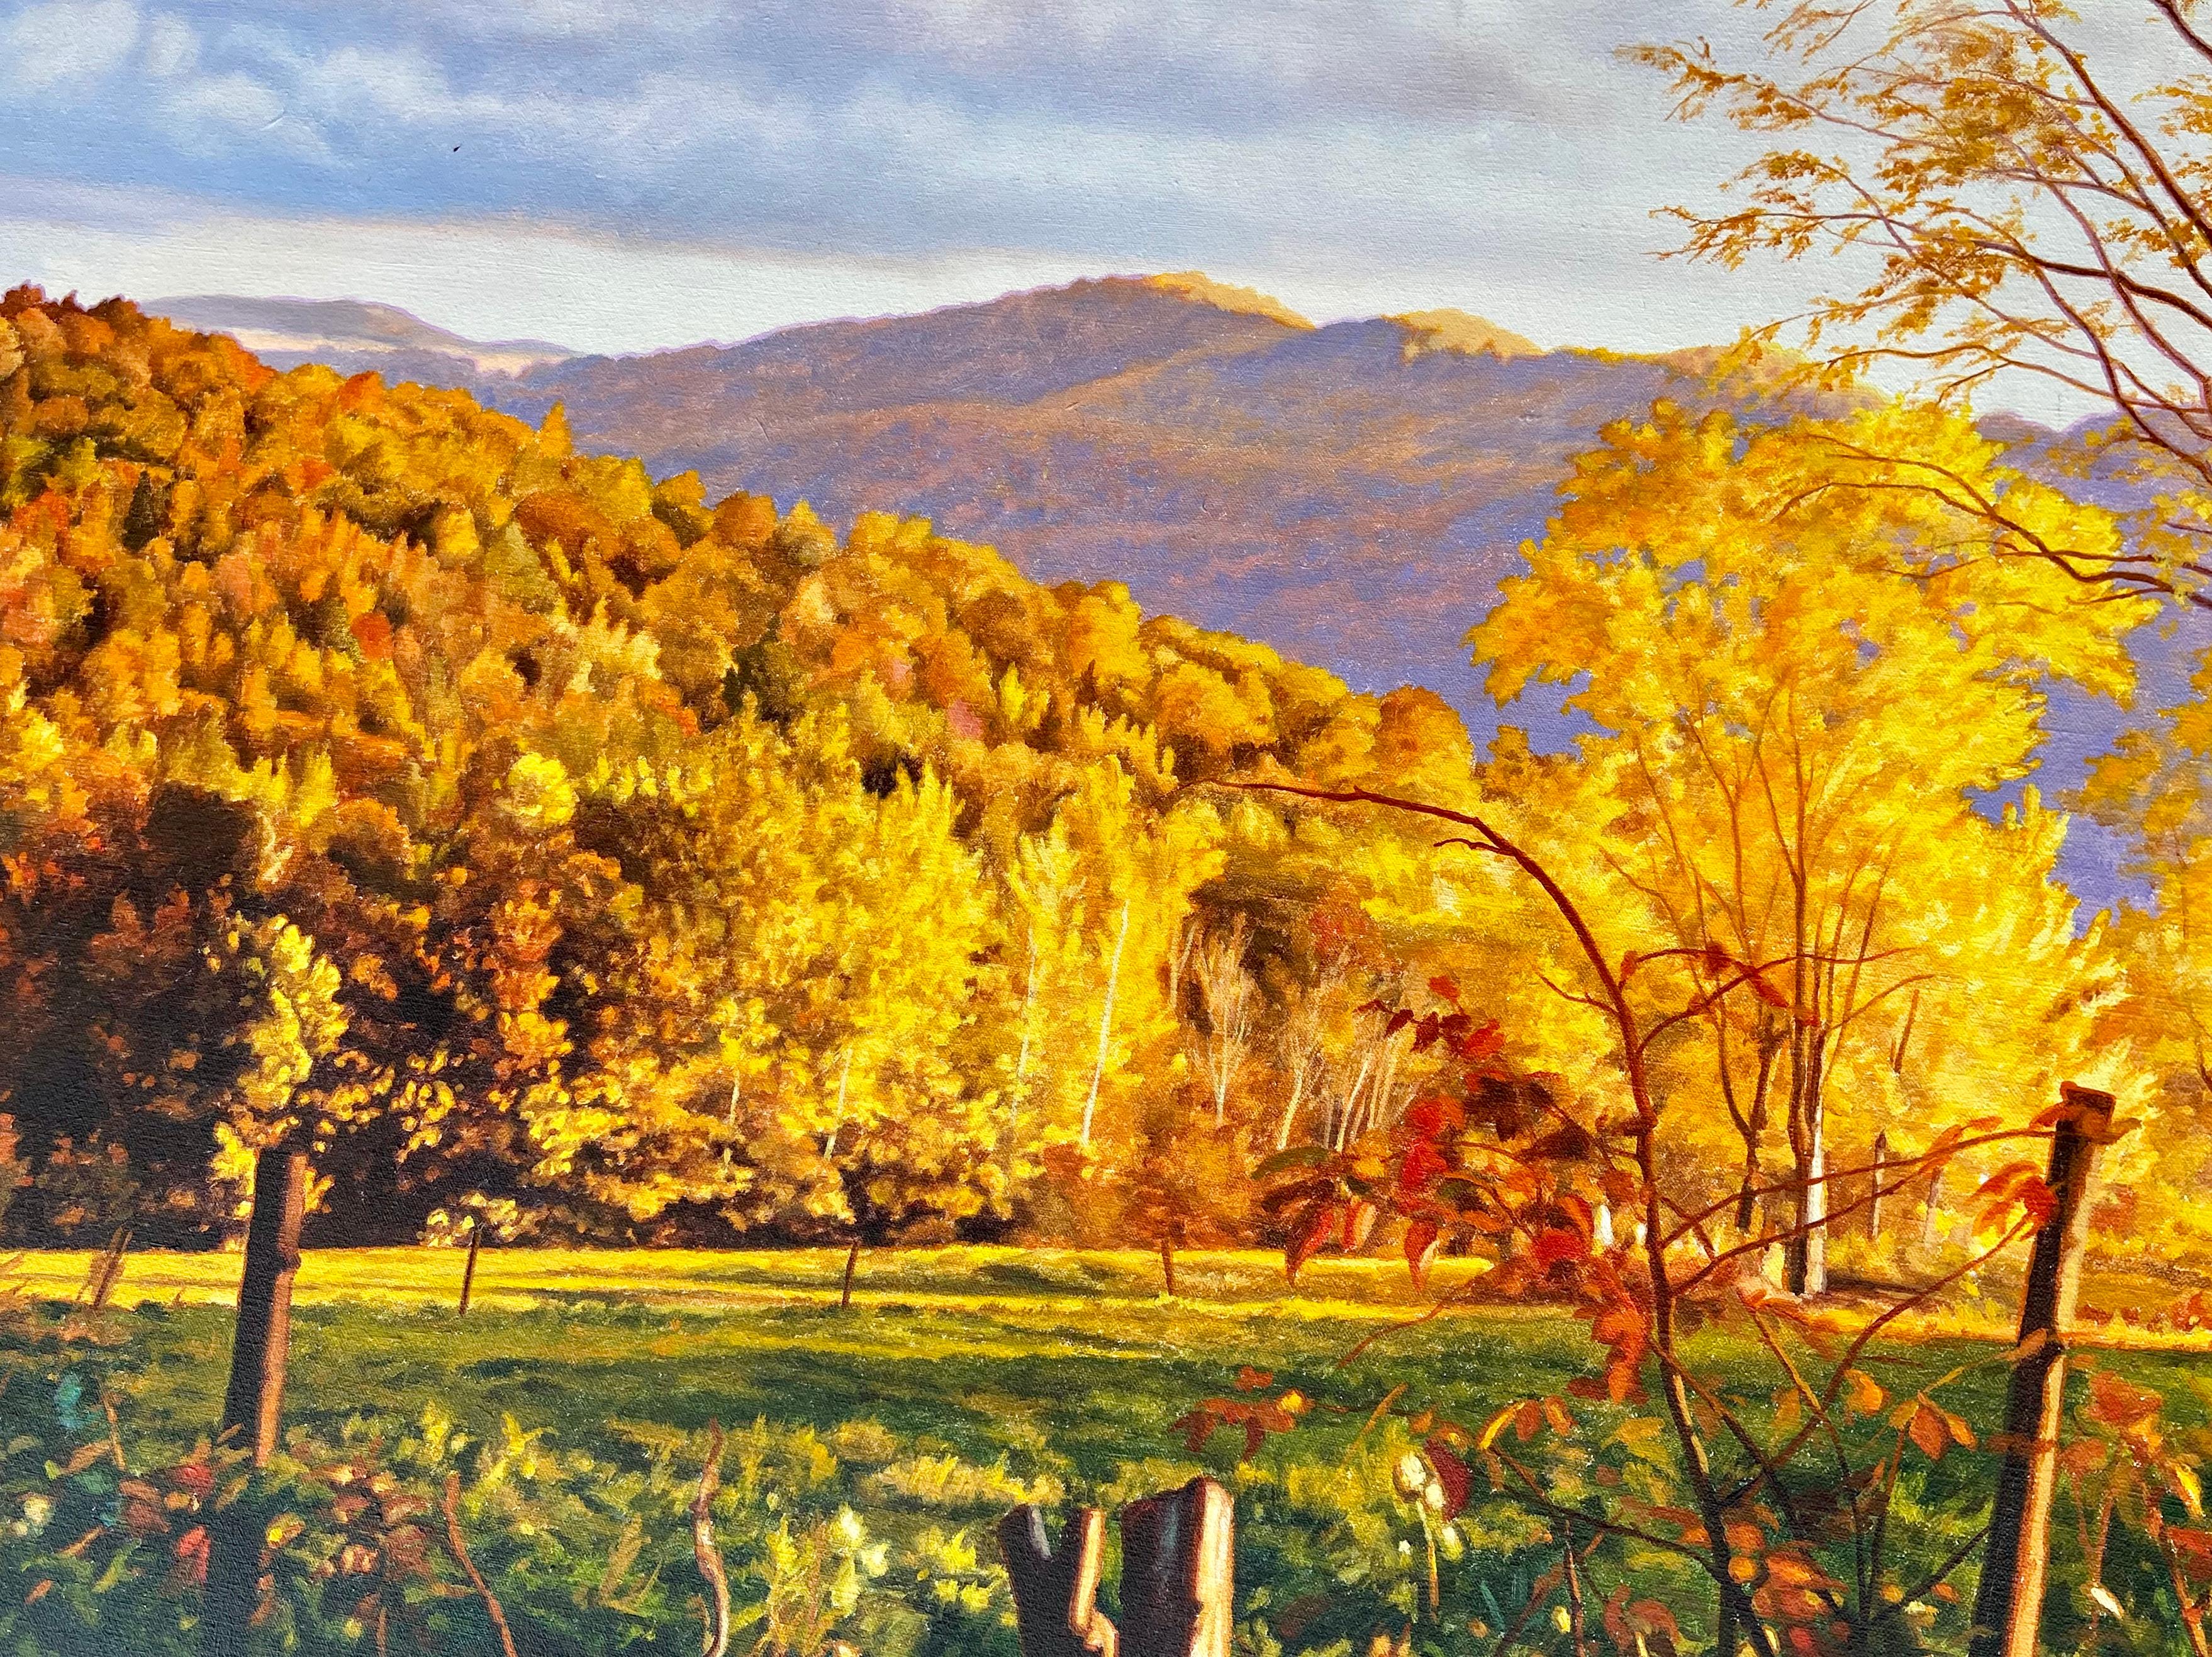 vermont landscape paintings